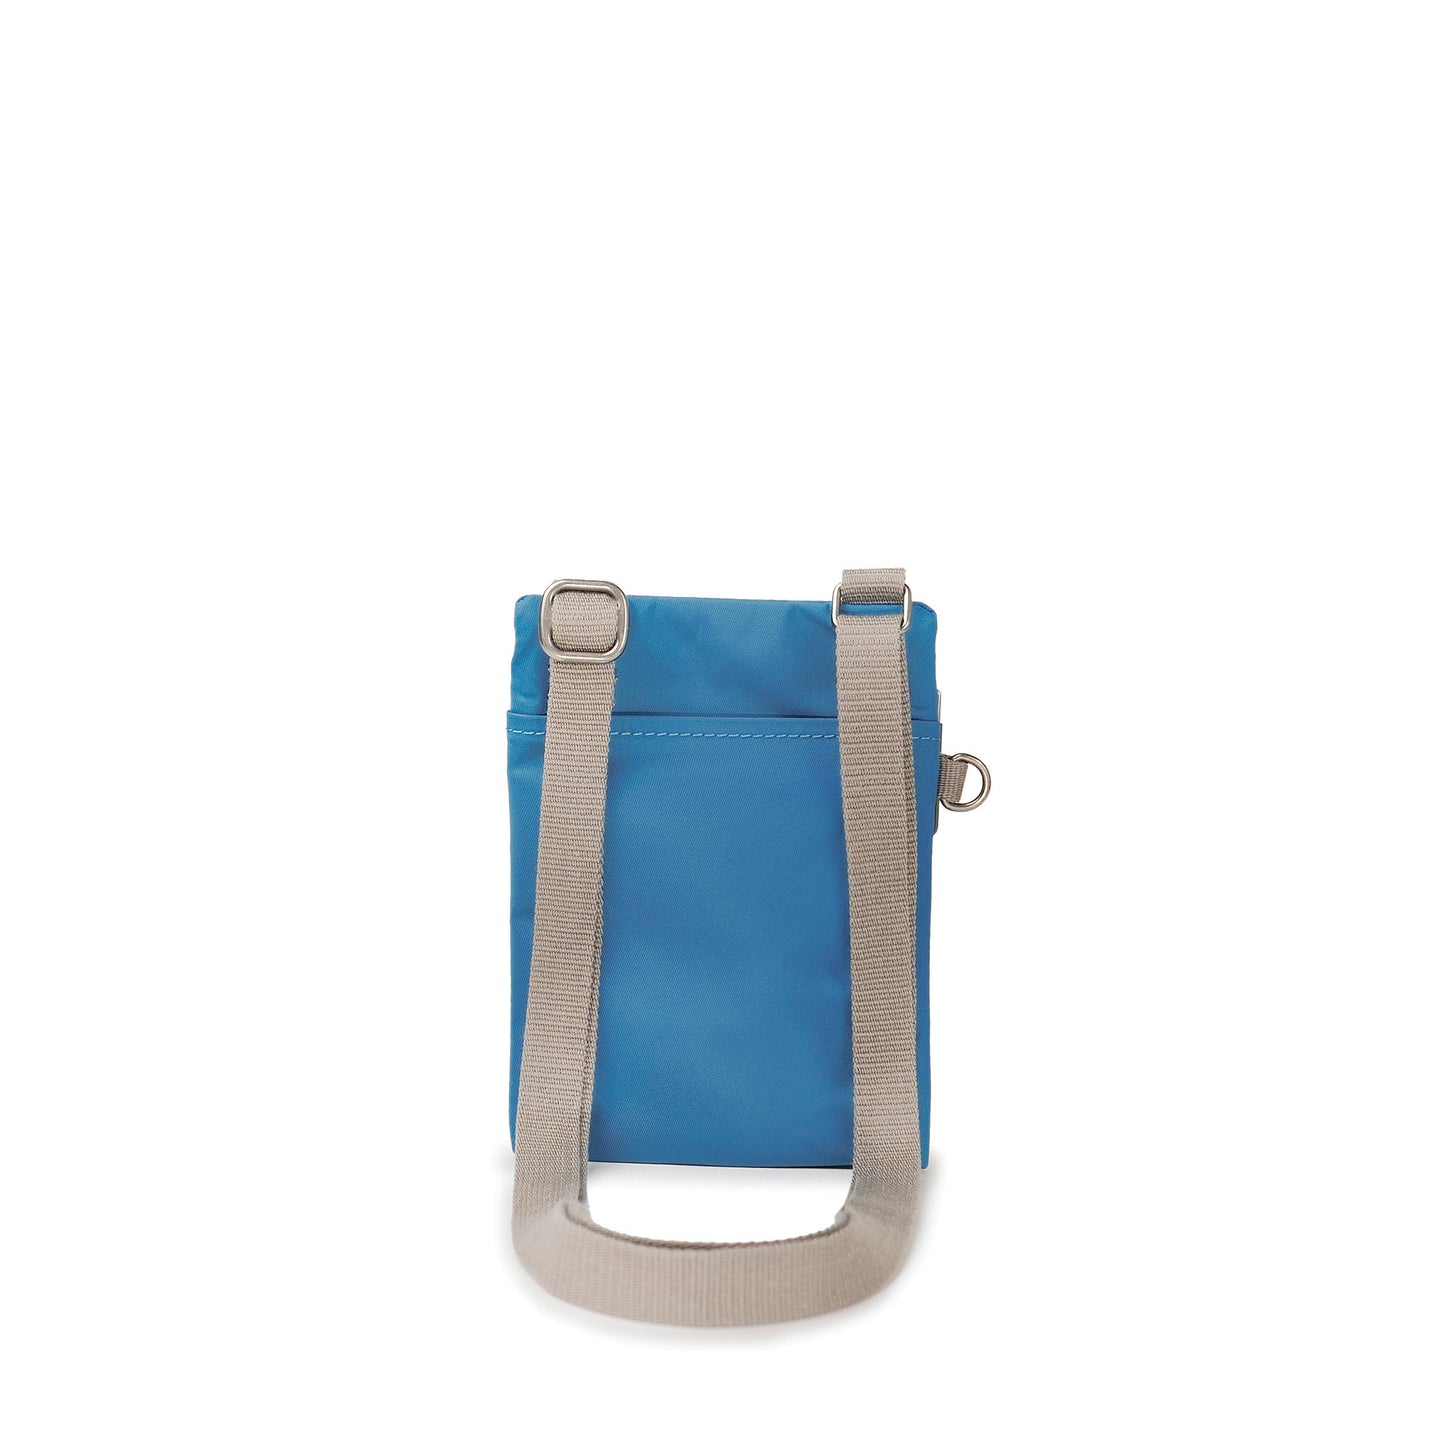 Roka London Chelsea Crossbody Phone Bag, Seaport (Recycled Nylon)